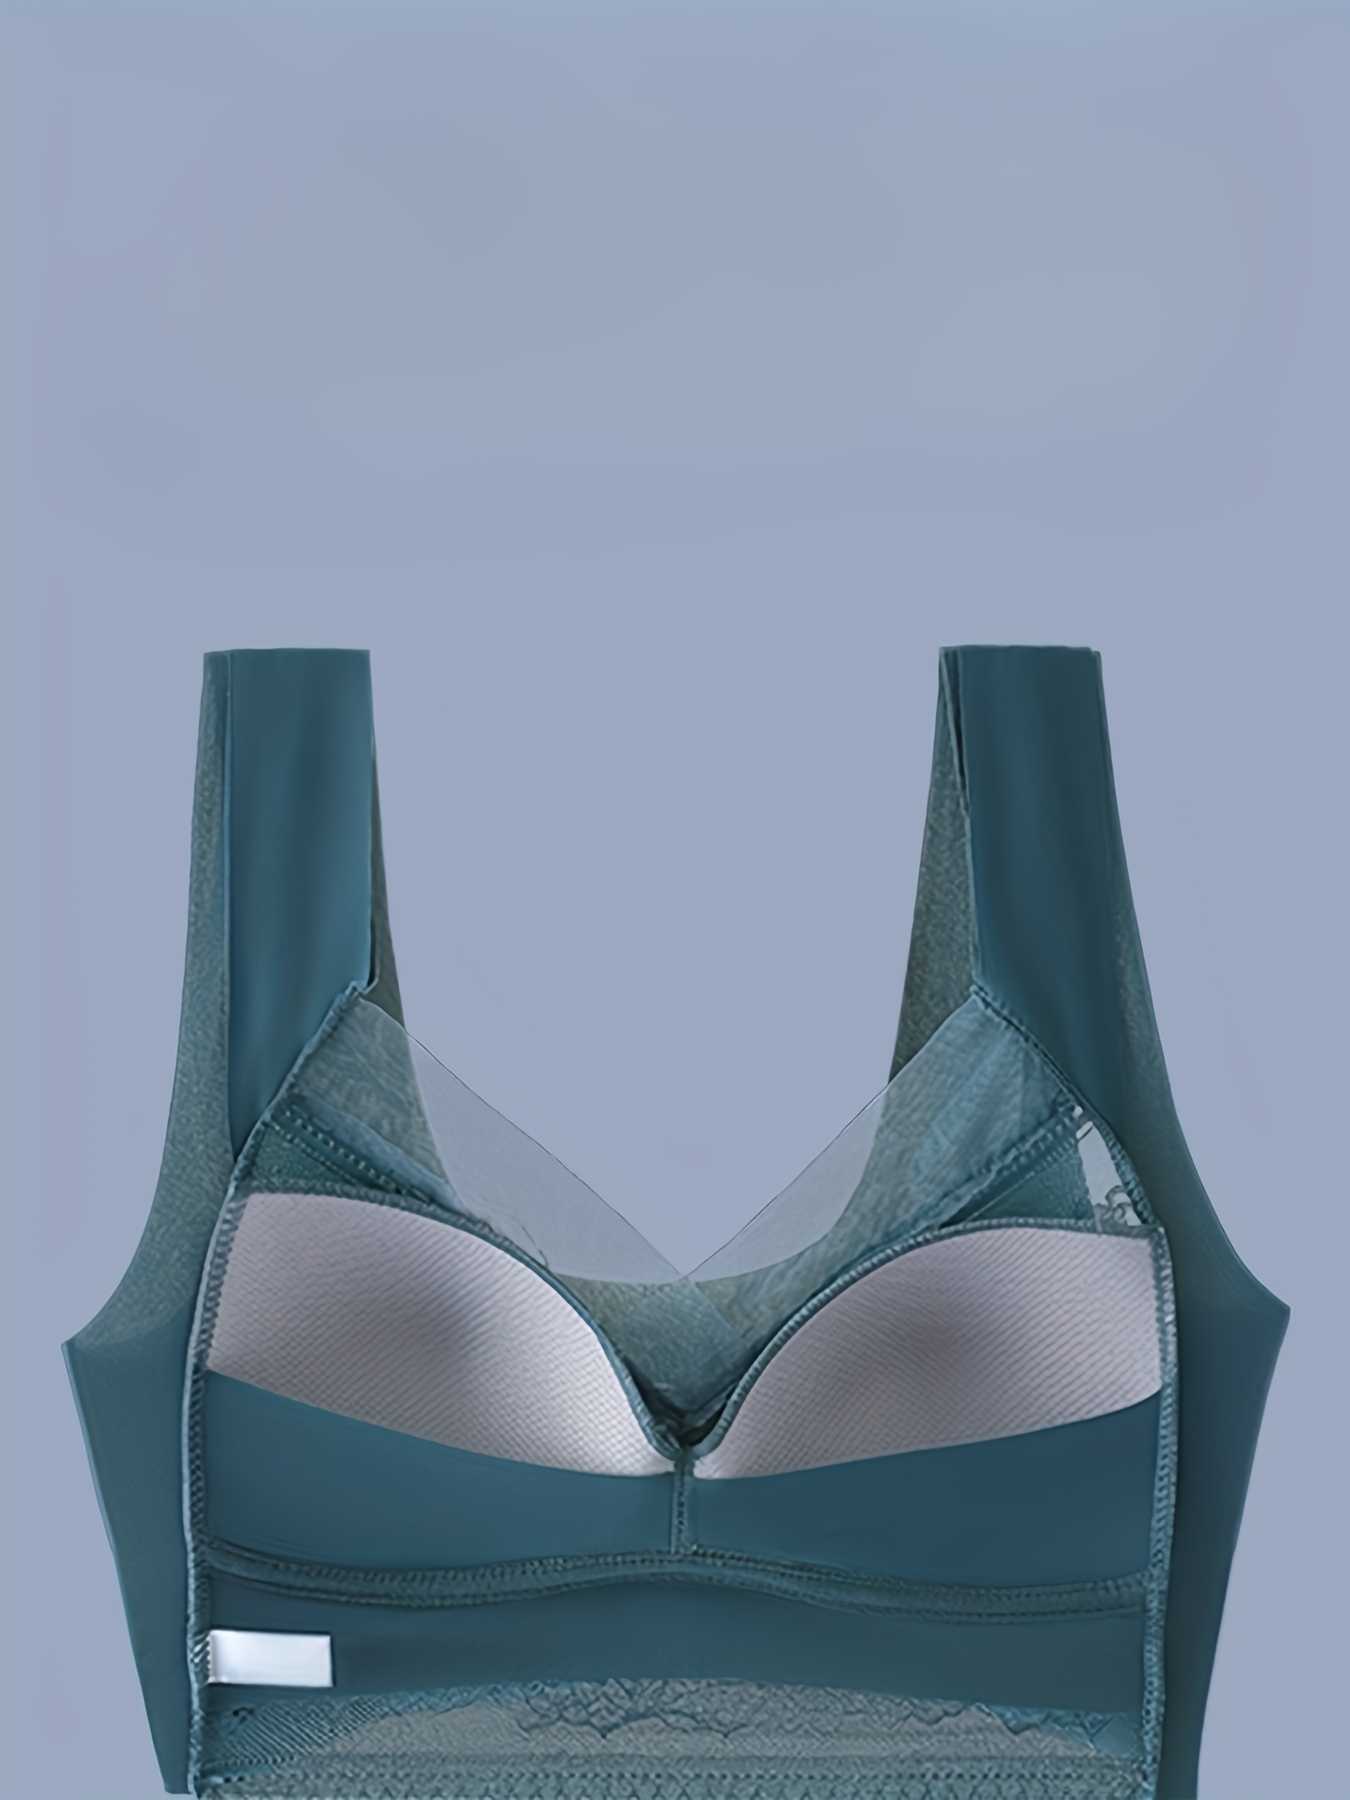 Paramour Women's Tempting Floral Lace Bra - Aqua Blue 38ddd : Target